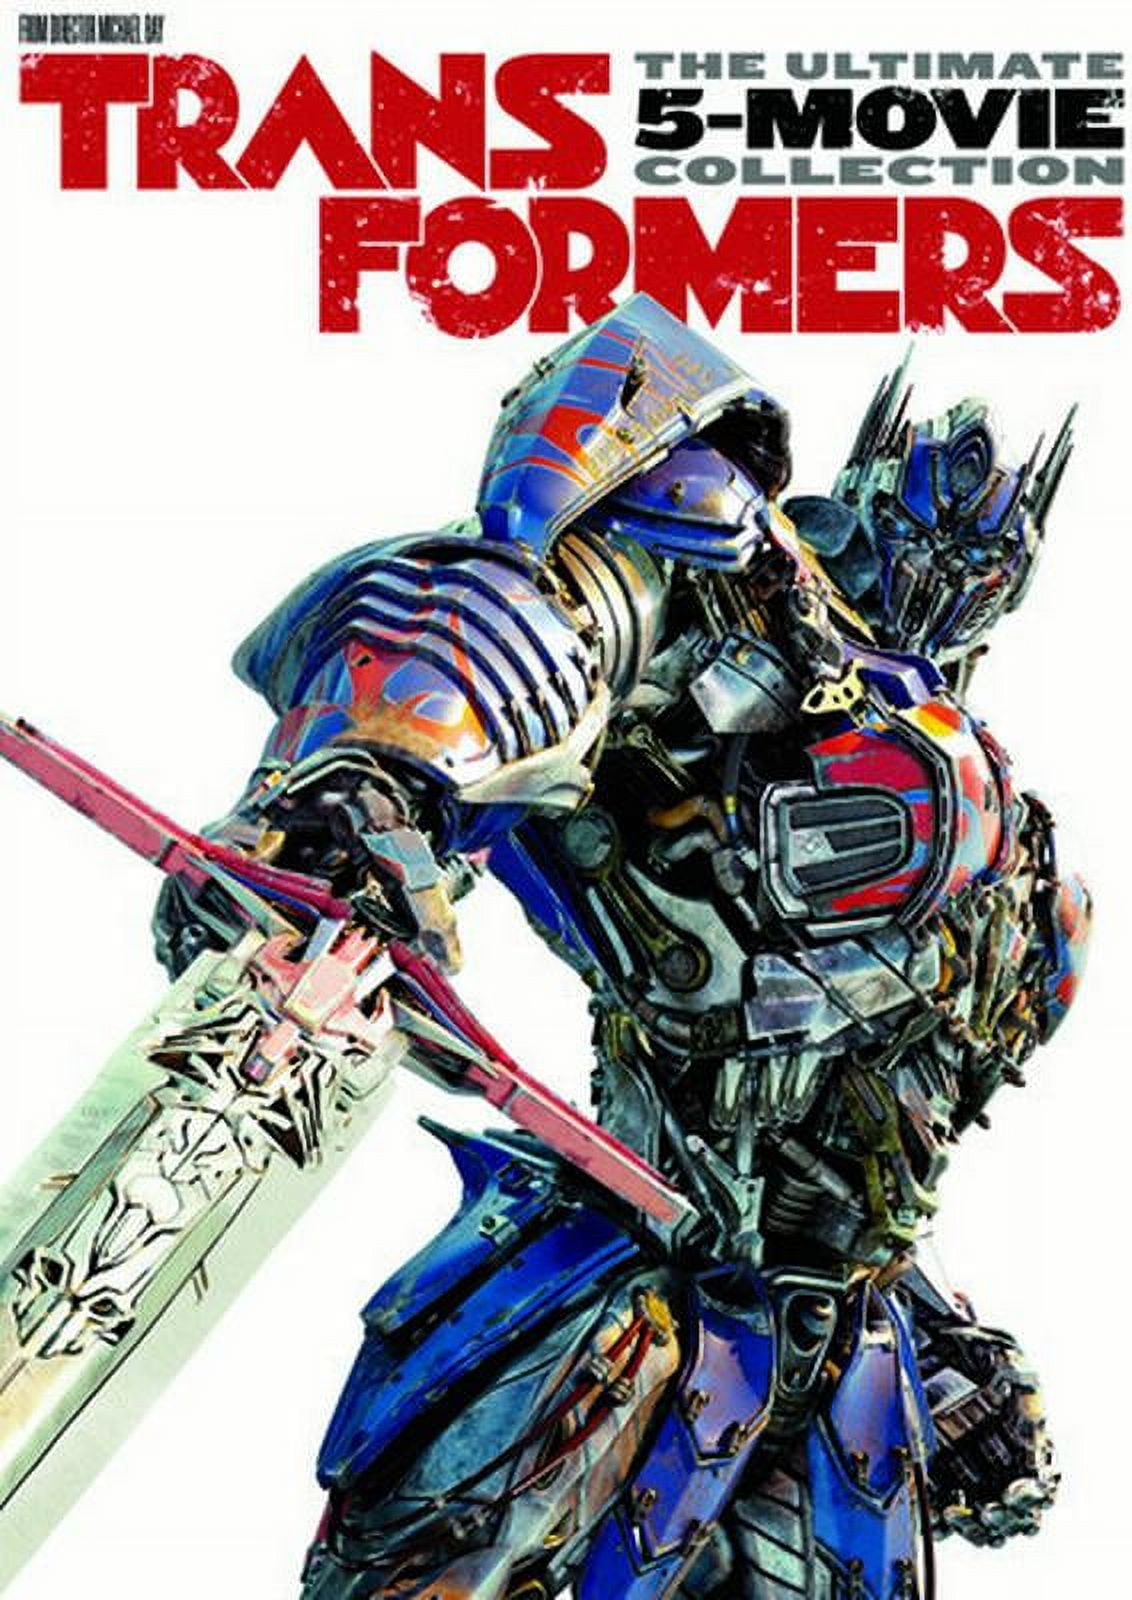 Dvd - Transformers - Coleção (5 Filmes) em Promoção na Americanas